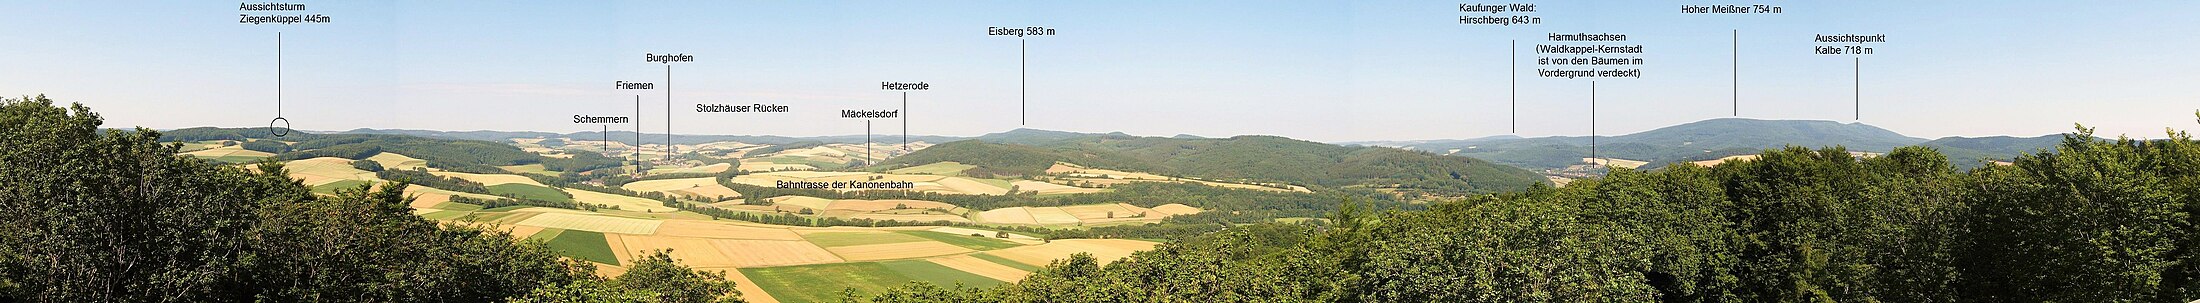 Westblick vom Pionierturm auf dem Mäuseberg. Zu sehen ist links der Schemmerngrund und rechts der Hohe Meißner.